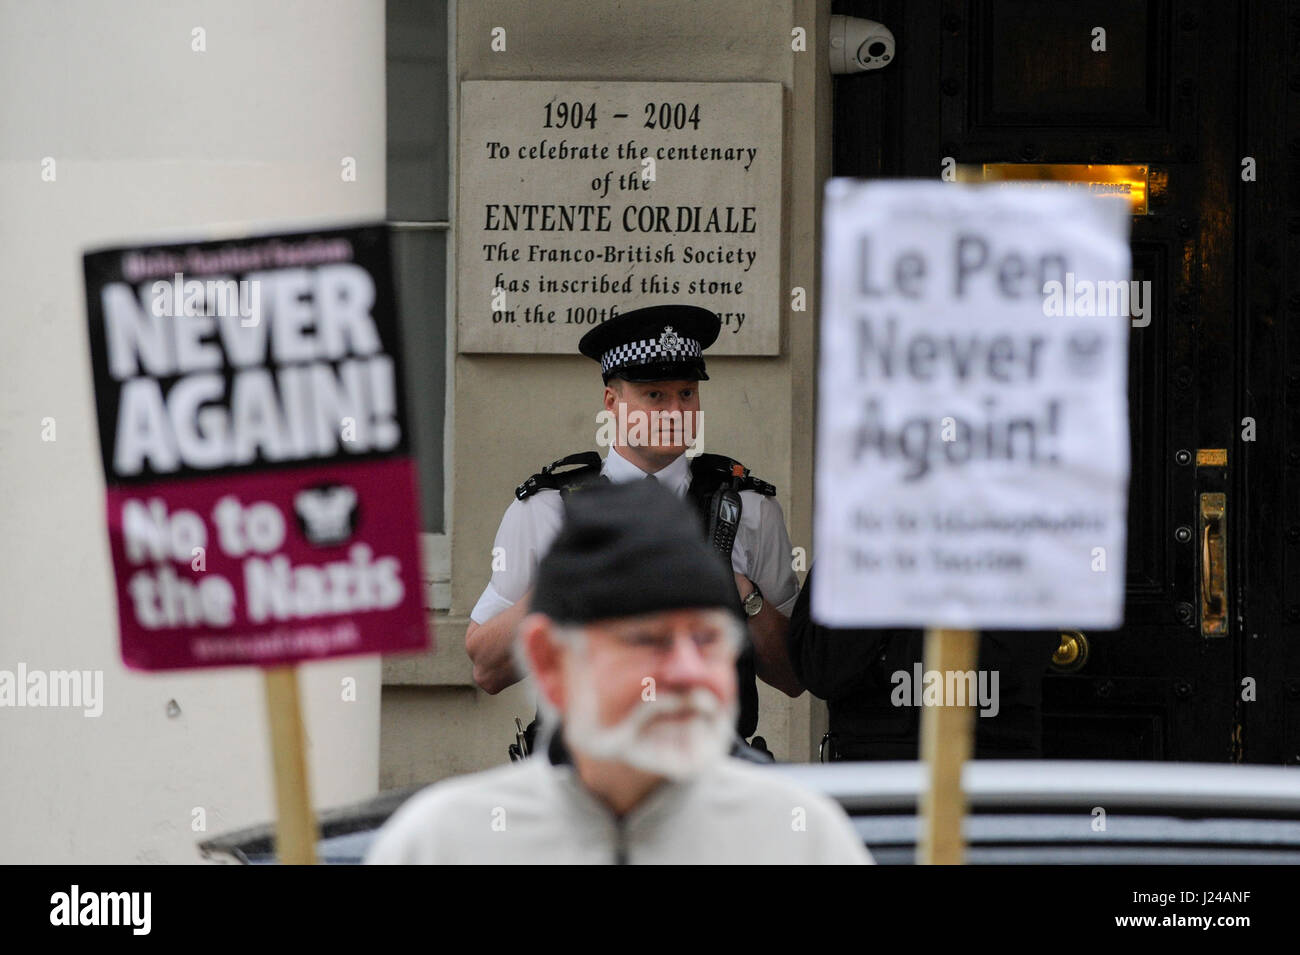 Londra, Regno Unito. 24 apr, 2017. I dimostranti si riuniscono al di fuori dell'Ambasciata di Francia in Knightsbridge per protestare contro il fascismo e il francese il candidato presidenziale Marine Le Pen. Credito: Stephen Chung/Alamy Live News Foto Stock